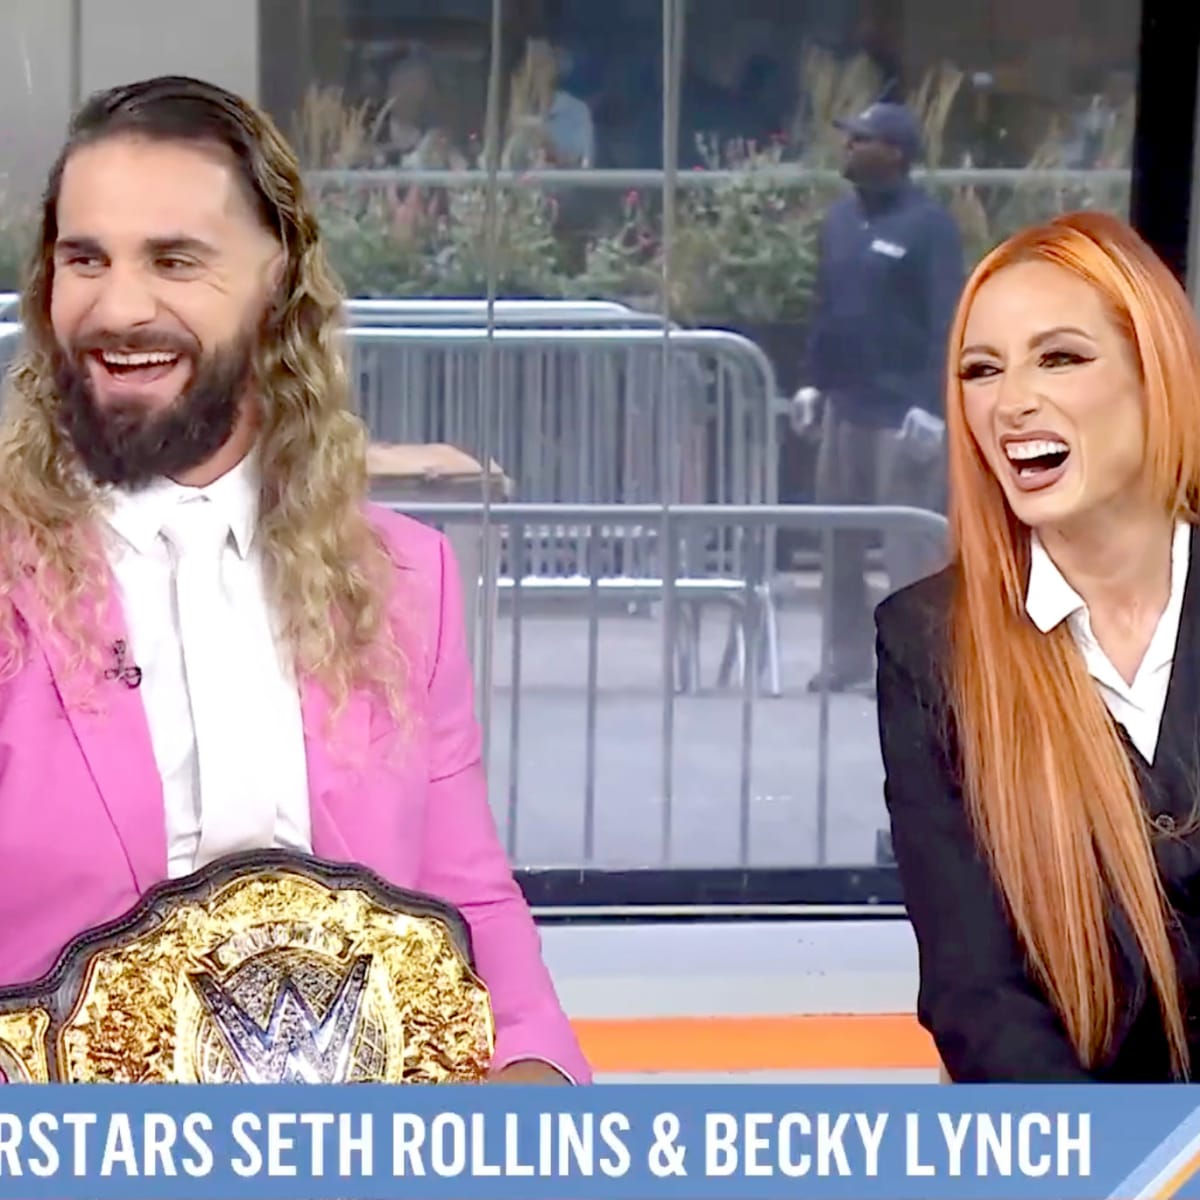 WWE United Kingdom - Seth Rollins & Becky Lynch got hold of the